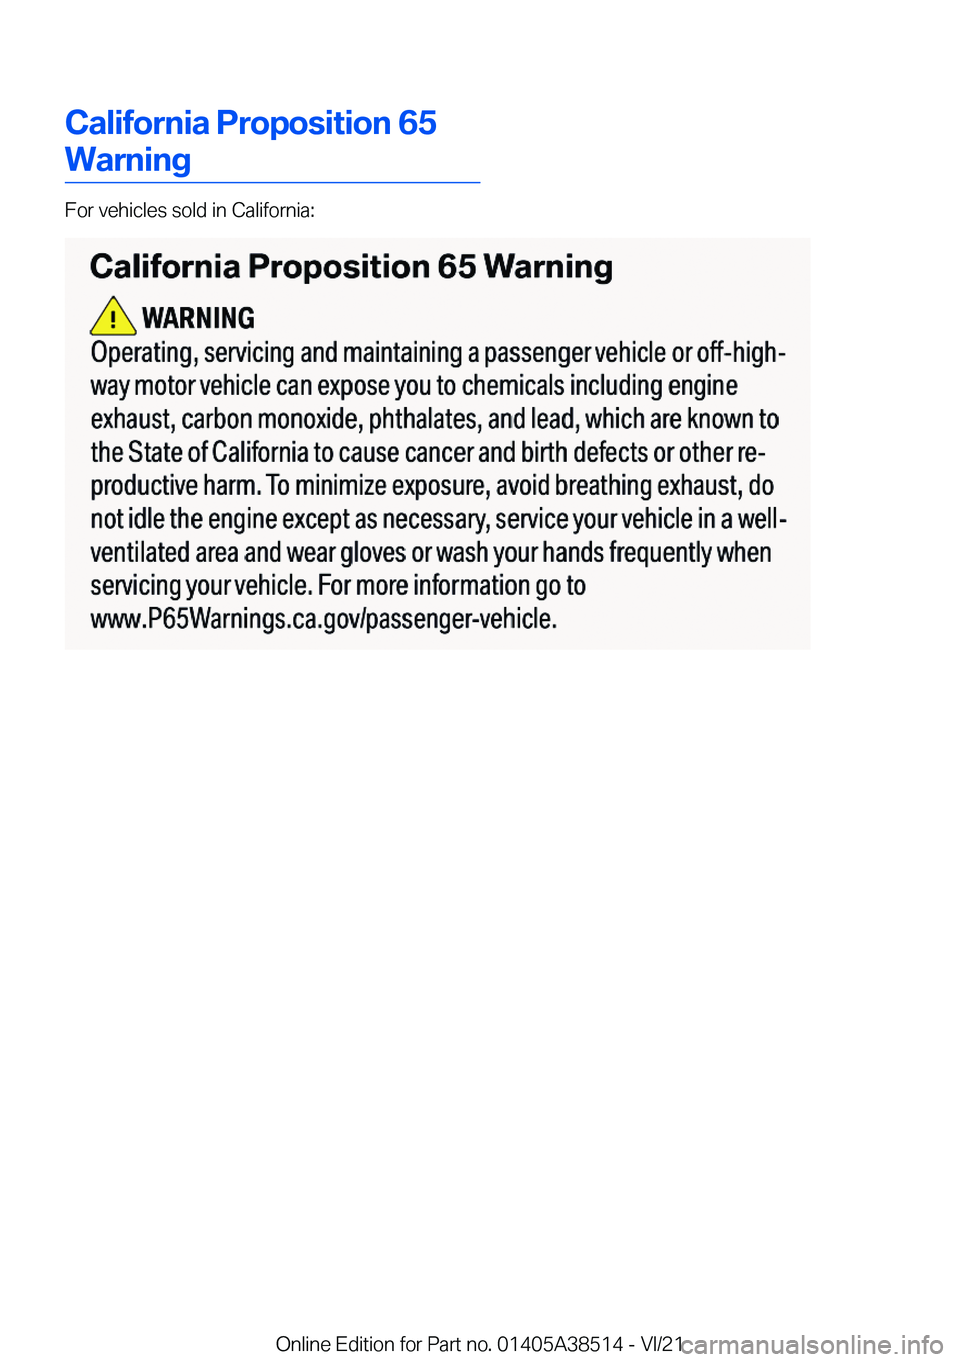 BMW X3 2022  Owners Manual �C�a�l�i�f�o�r�n�i�a��P�r�o�p�o�s�i�t�i�o�n��6�5
�W�a�r�n�i�n�g
�F�o�r��v�e�h�i�c�l�e�s��s�o�l�d��i�n��C�a�l�i�f�o�r�n�i�a�:
�O�n�l�i�n�e��E�d�i�t�i�o�n��f�o�r��P�a�r�t��n�o�.��0�1�4�0�5�A�